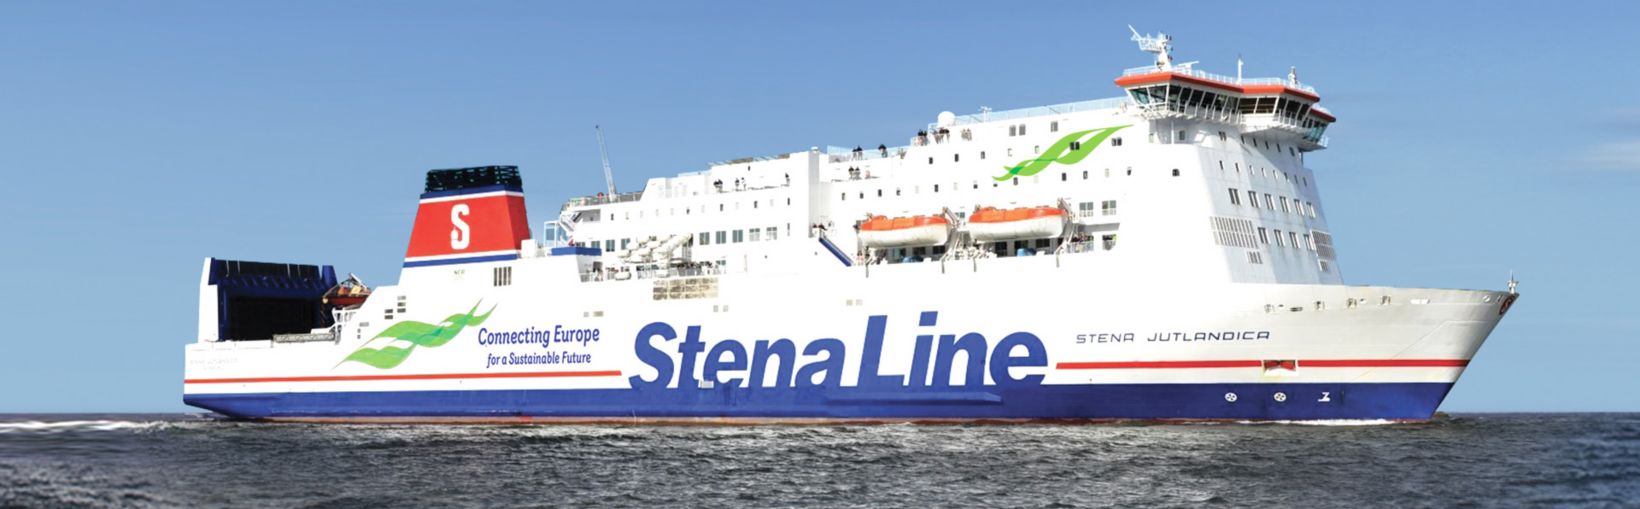 Stena Jutlandica ferry en el mar